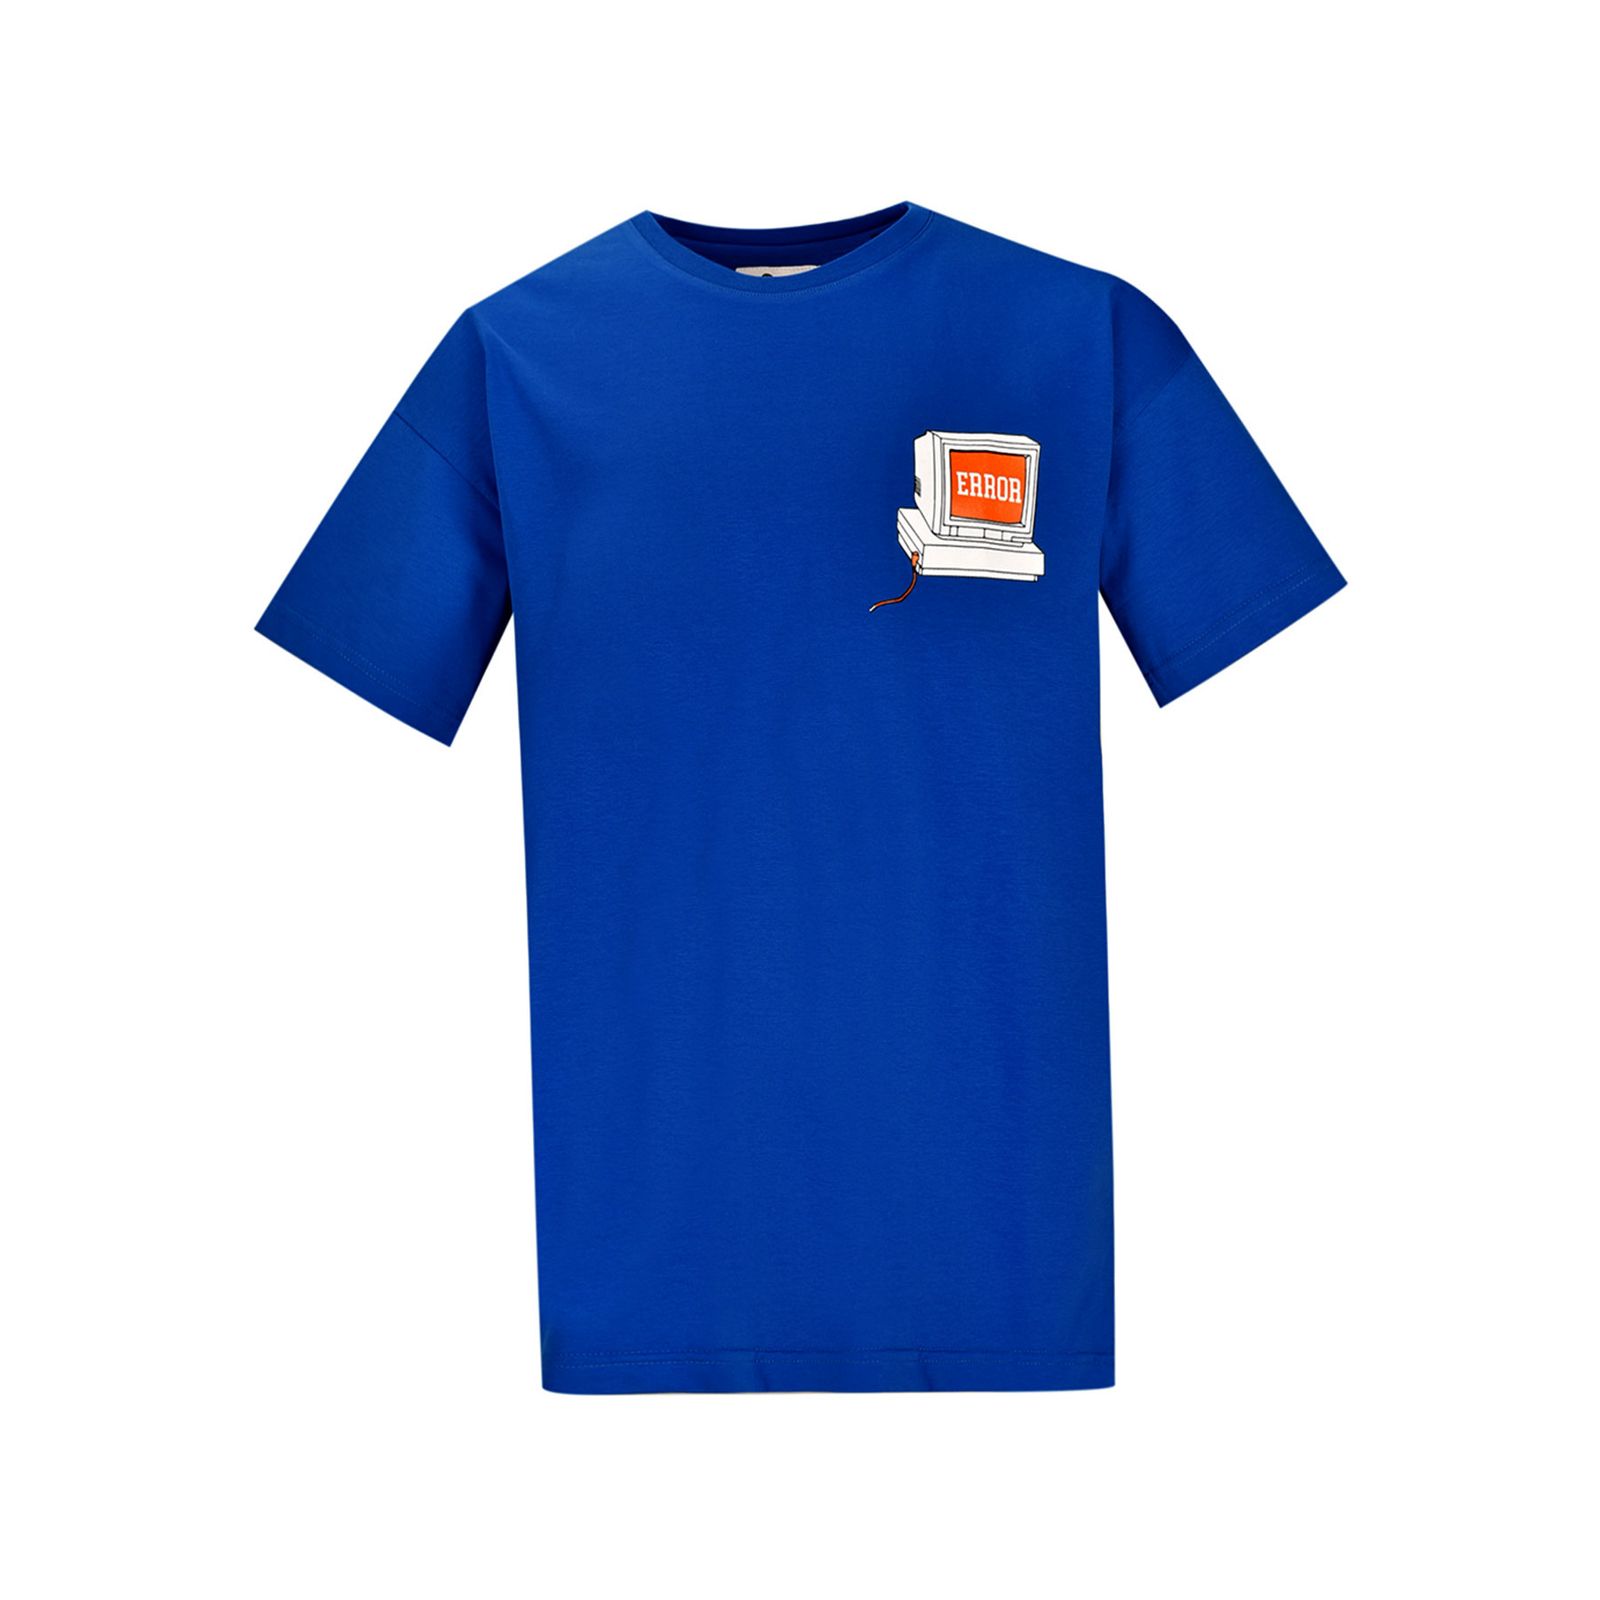 تی شرت آستین کوتاه مردانه بادی اسپینر مدل 3939 کد 1 رنگ آبي -  - 1